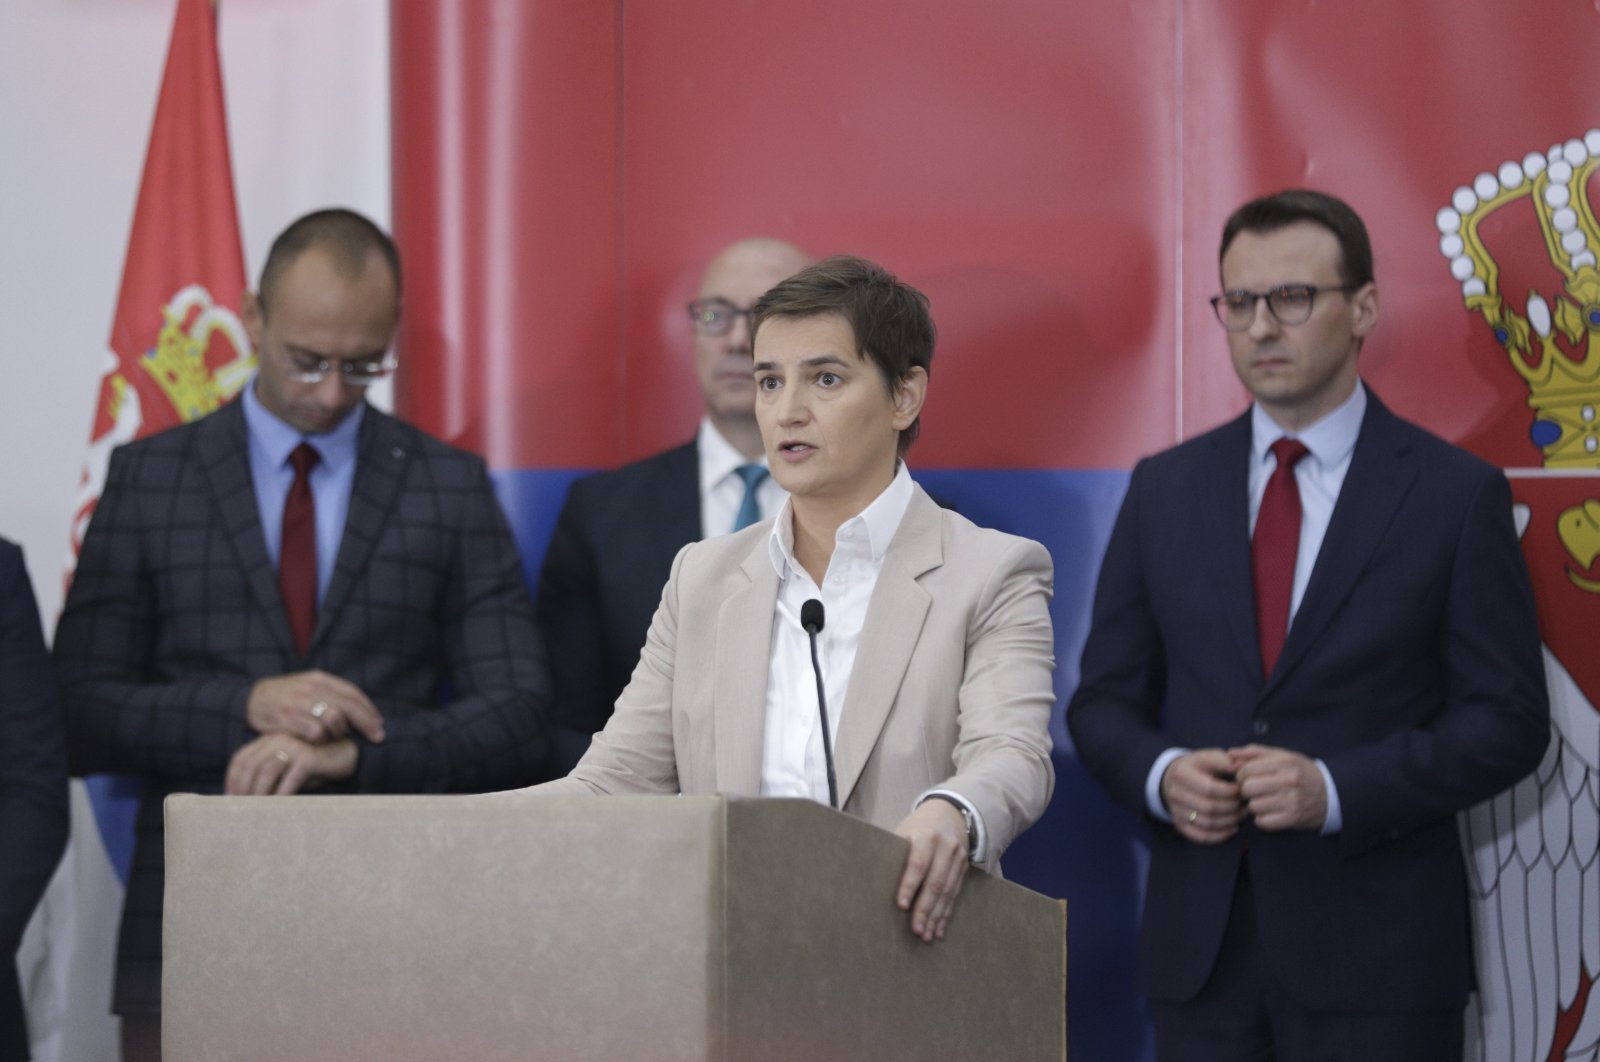 PM Serbia mengunjungi Kosovo utara di tengah ketegangan